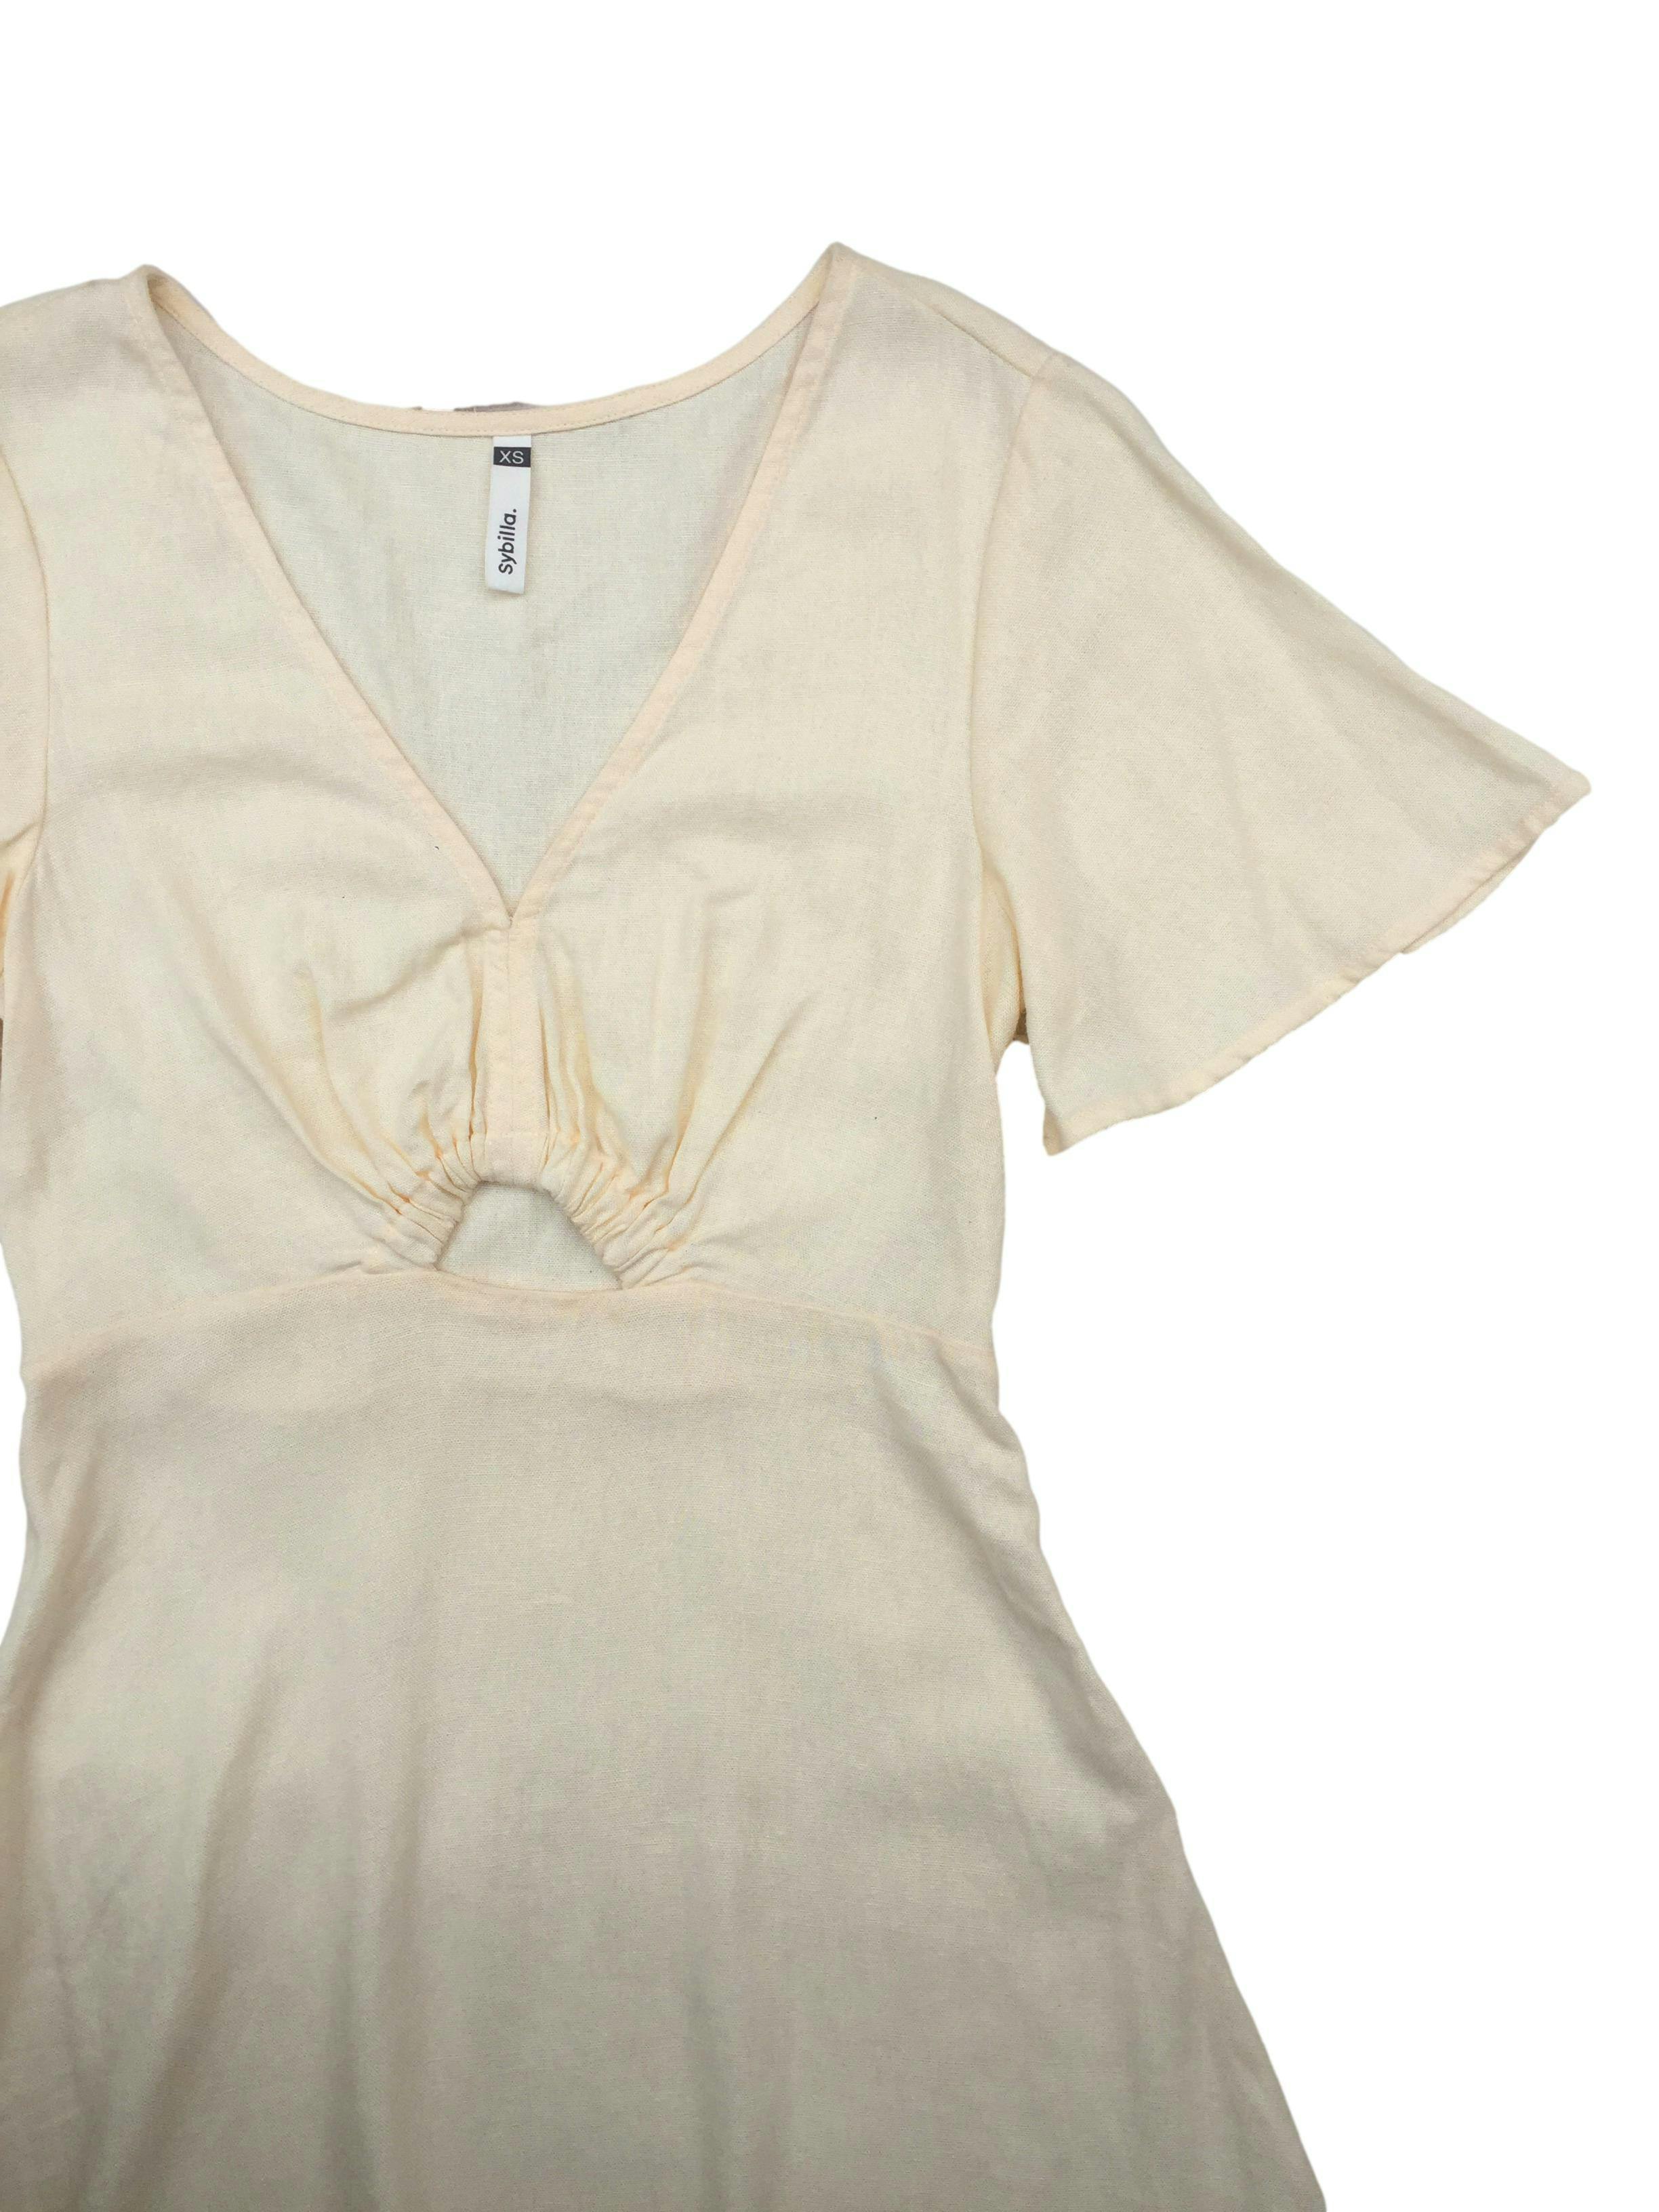 Vestido Sybilla beige de tela fresca lino-blend, cuello V, abertura bajo busto y cierre lateral invisible. Busto 80cm, Largo 80cm.